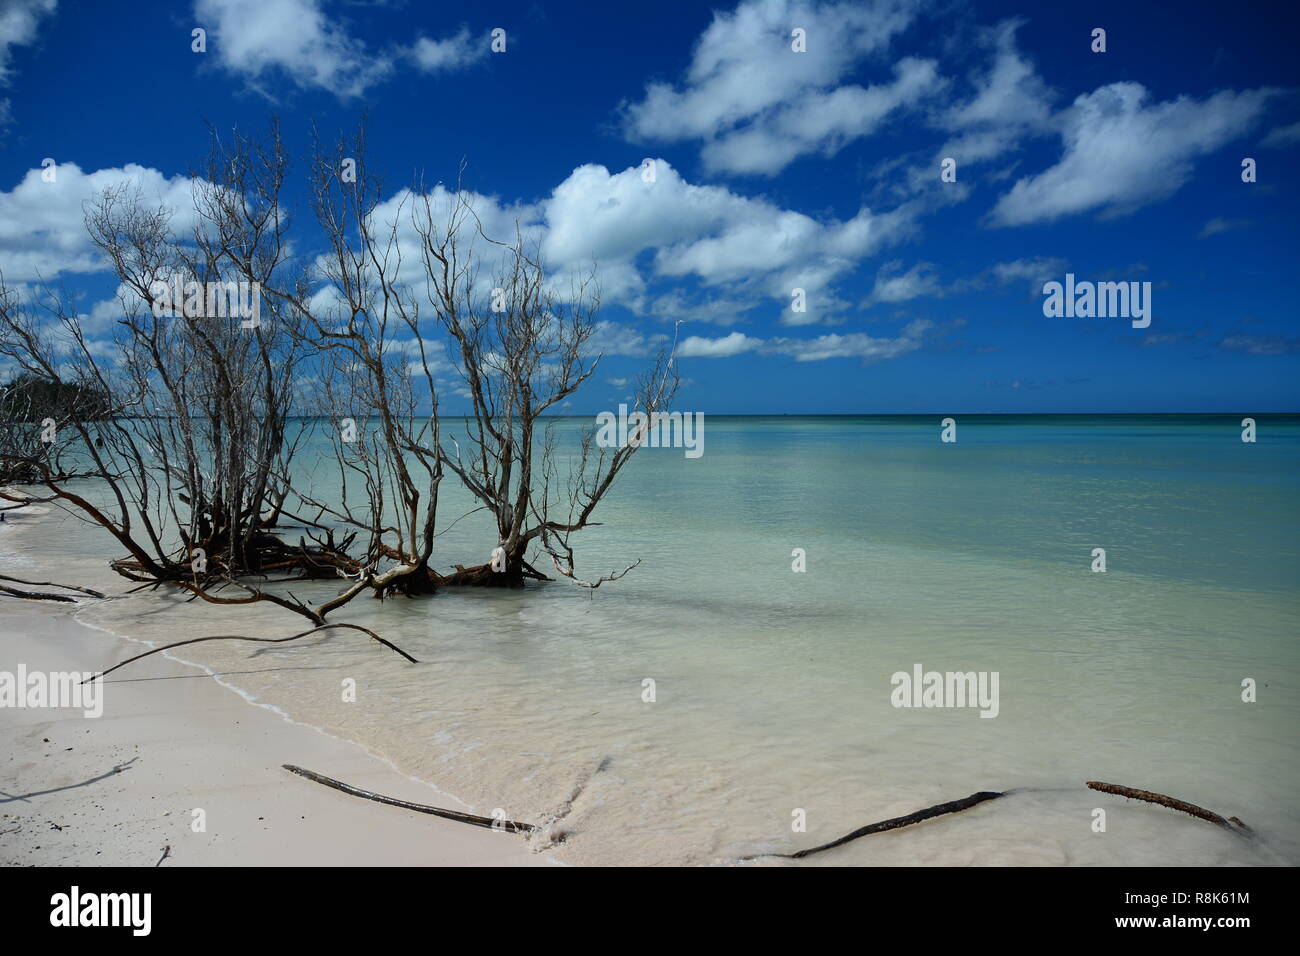 Playa salvaje, Cayo Jutias, Cuba, paraíso de los manglares, el mar, el mar, la mayoría picuresque Beach en la provincia de Pinar del Río Foto de stock